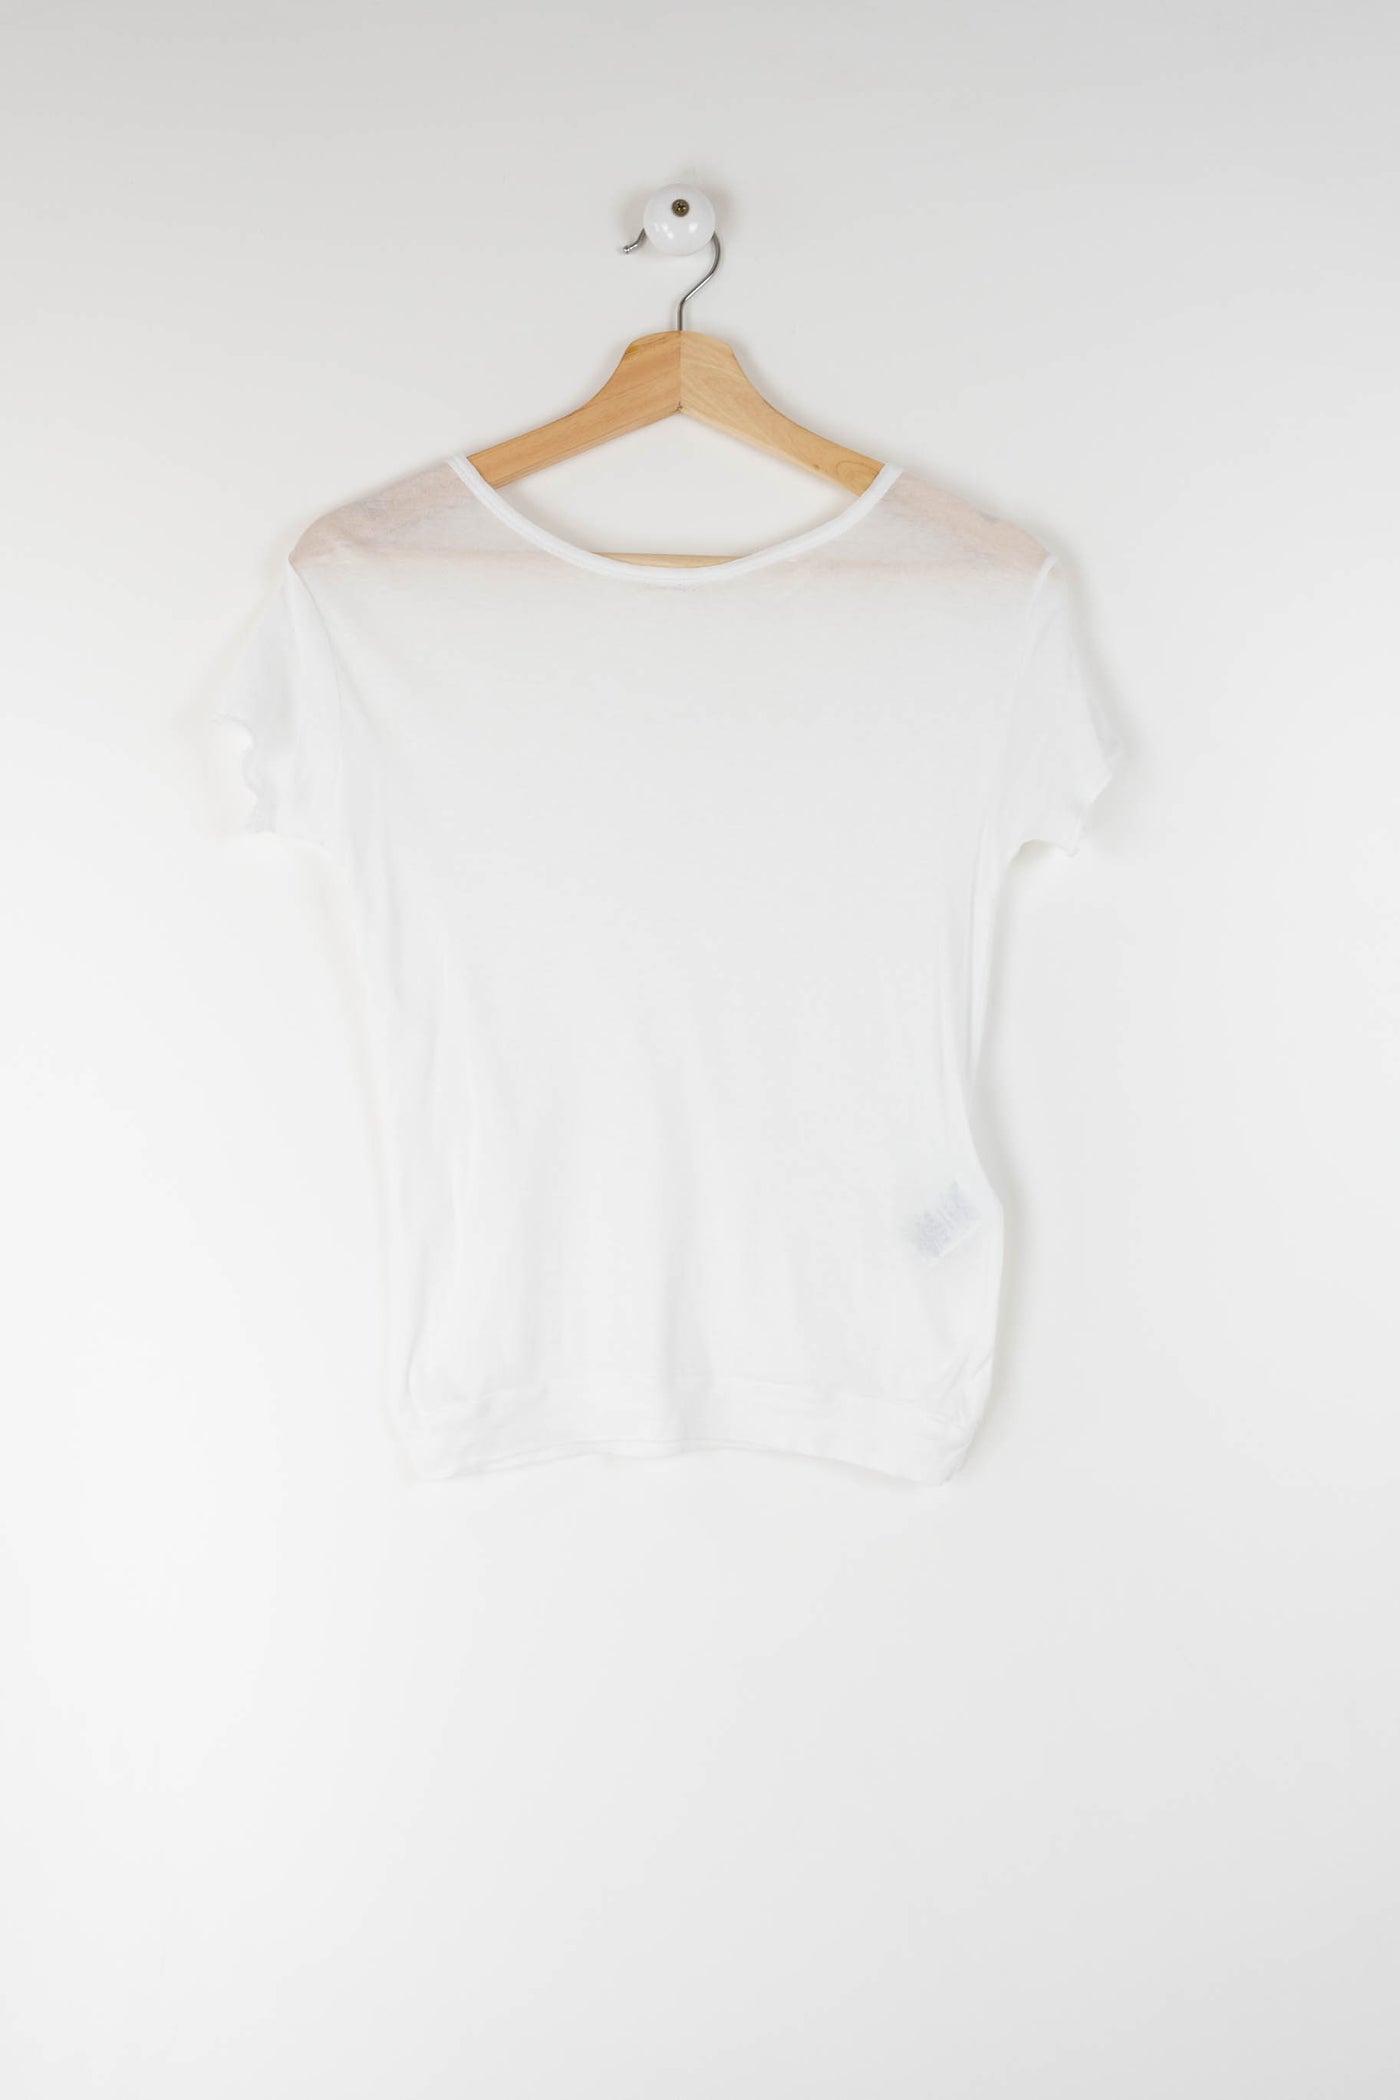 Camiseta blanca básica semitransparente